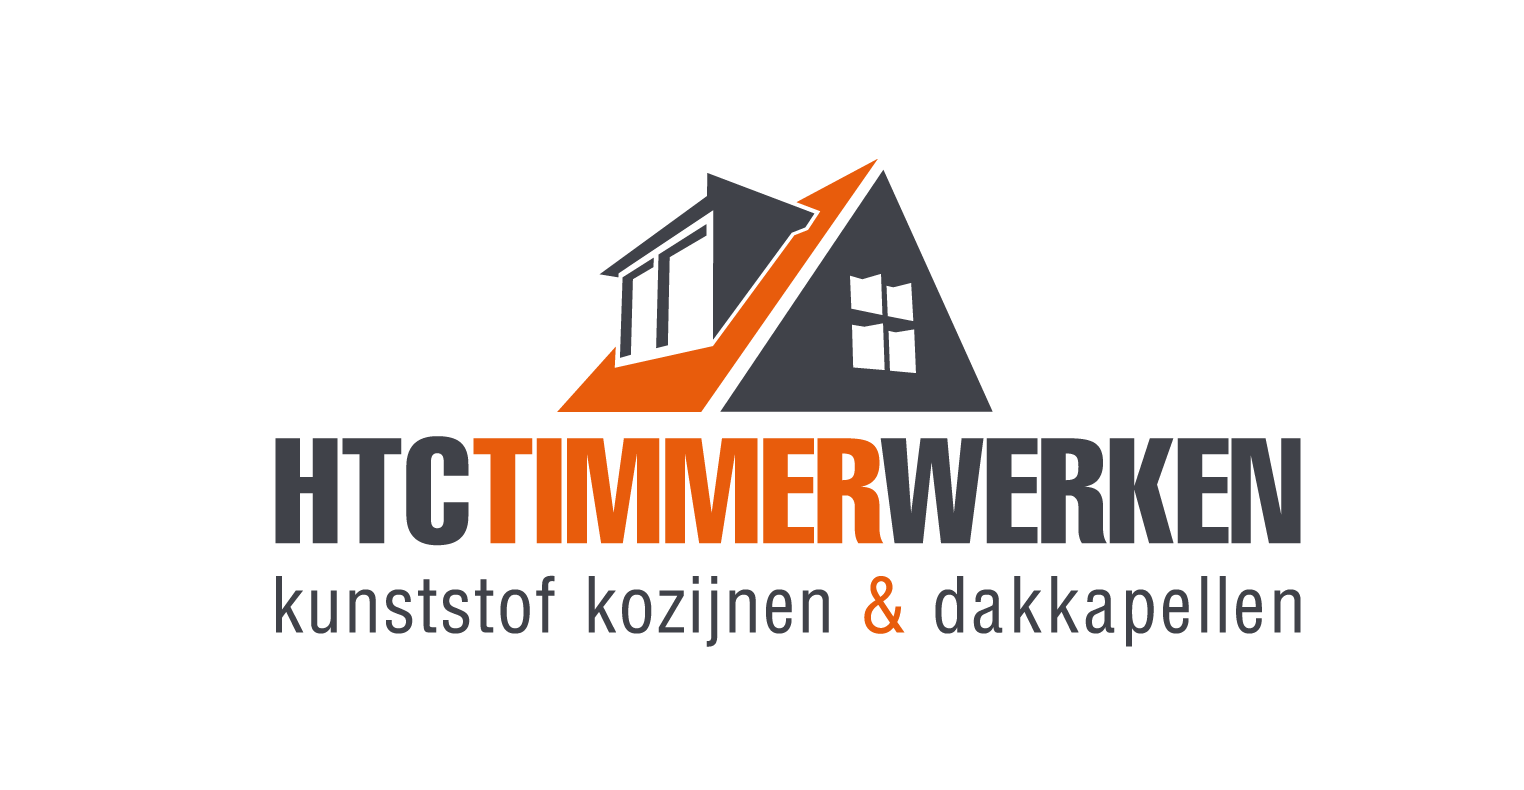 HTC Timmerwerken logo